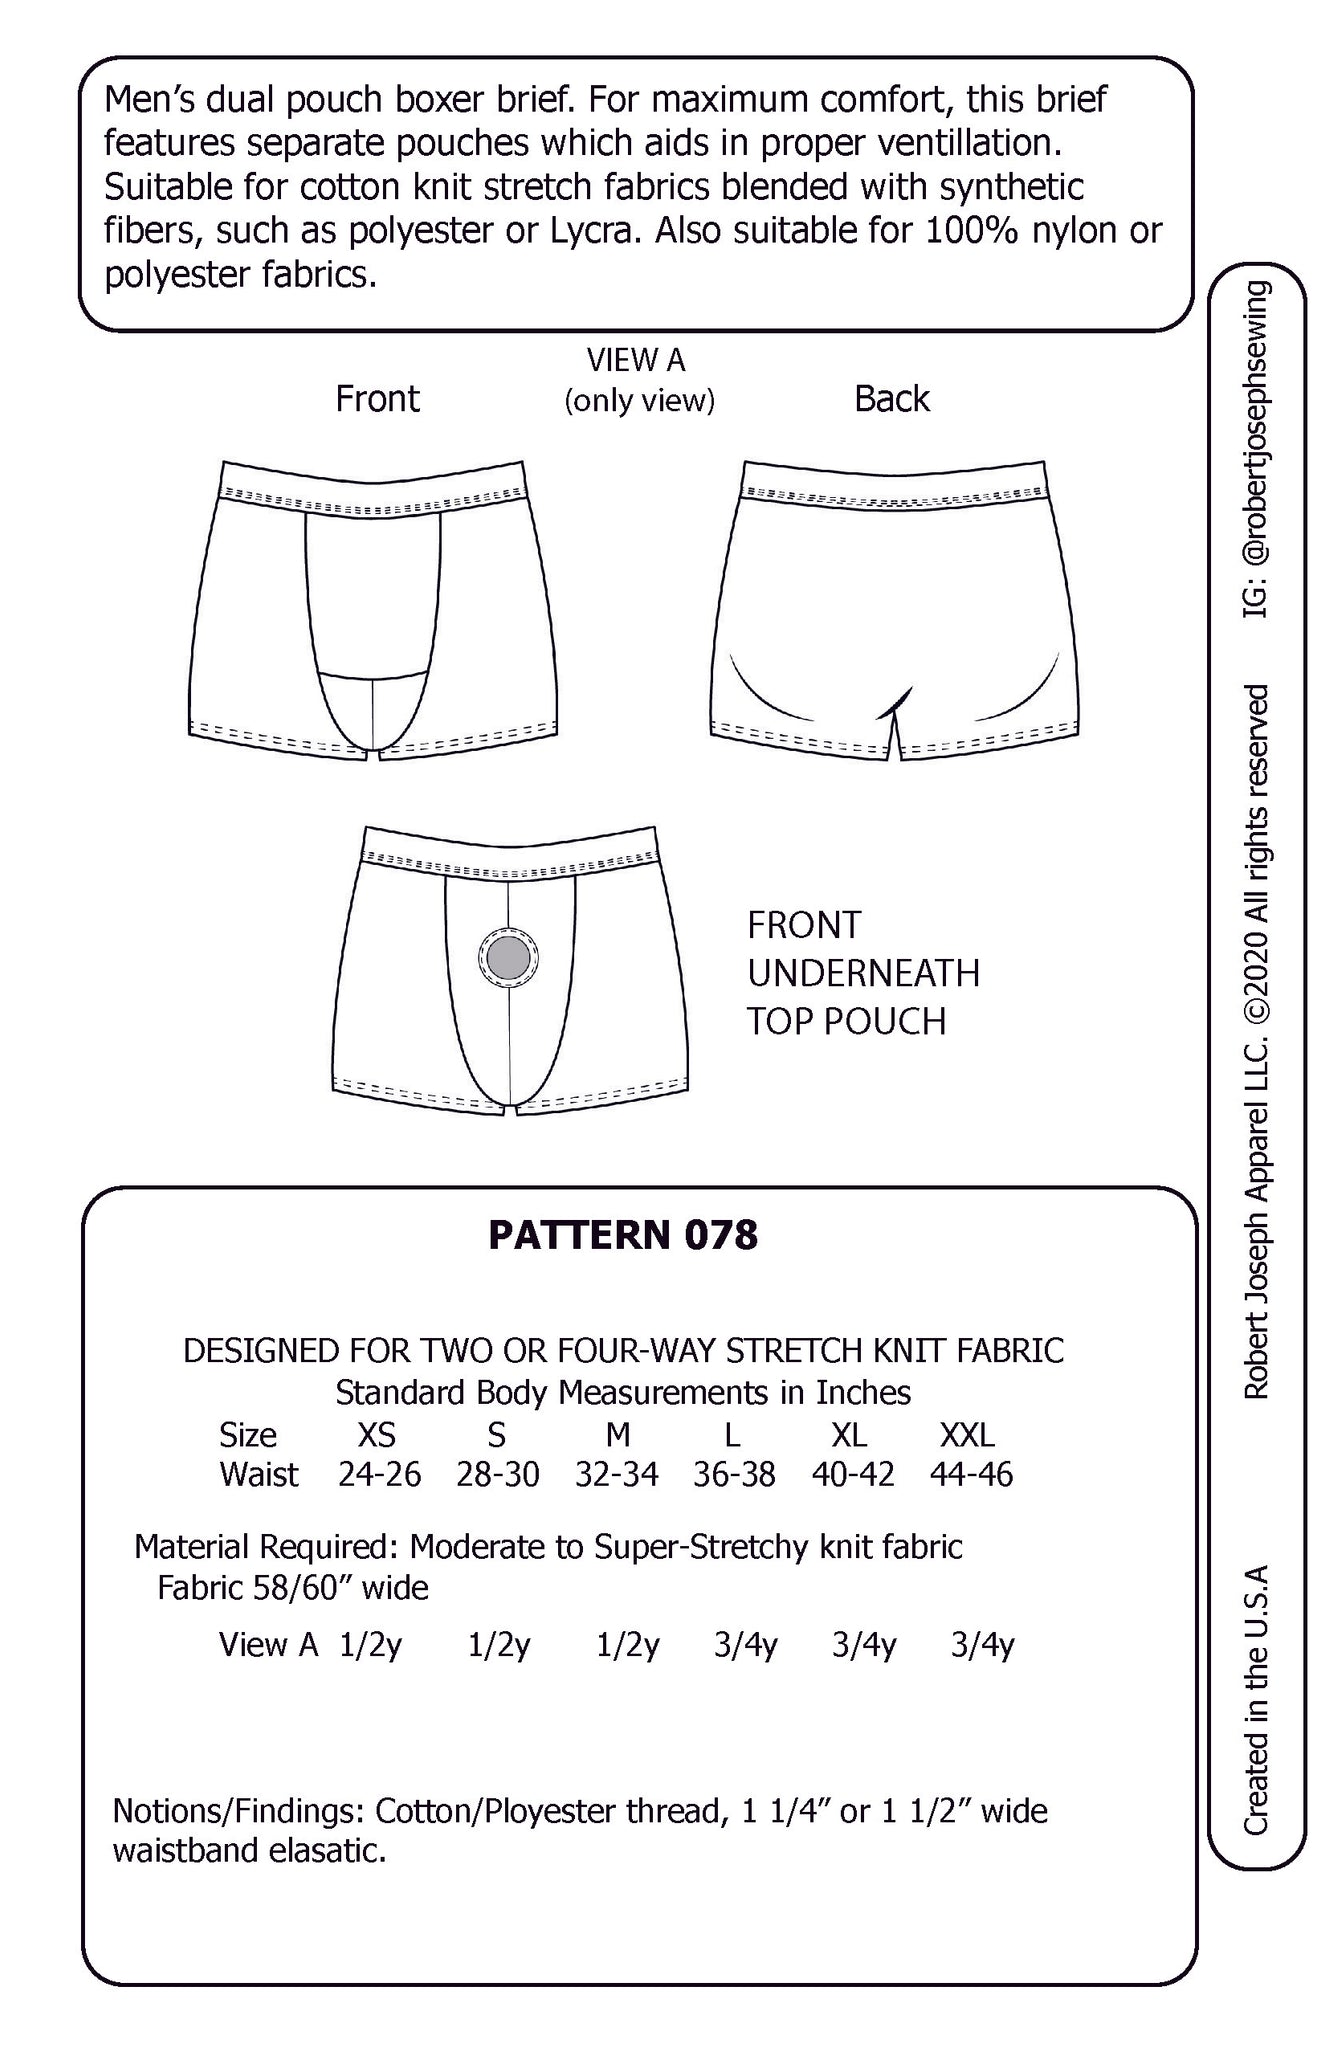 Men Dual Pouch Boxer Brief Underwear Manufacturer